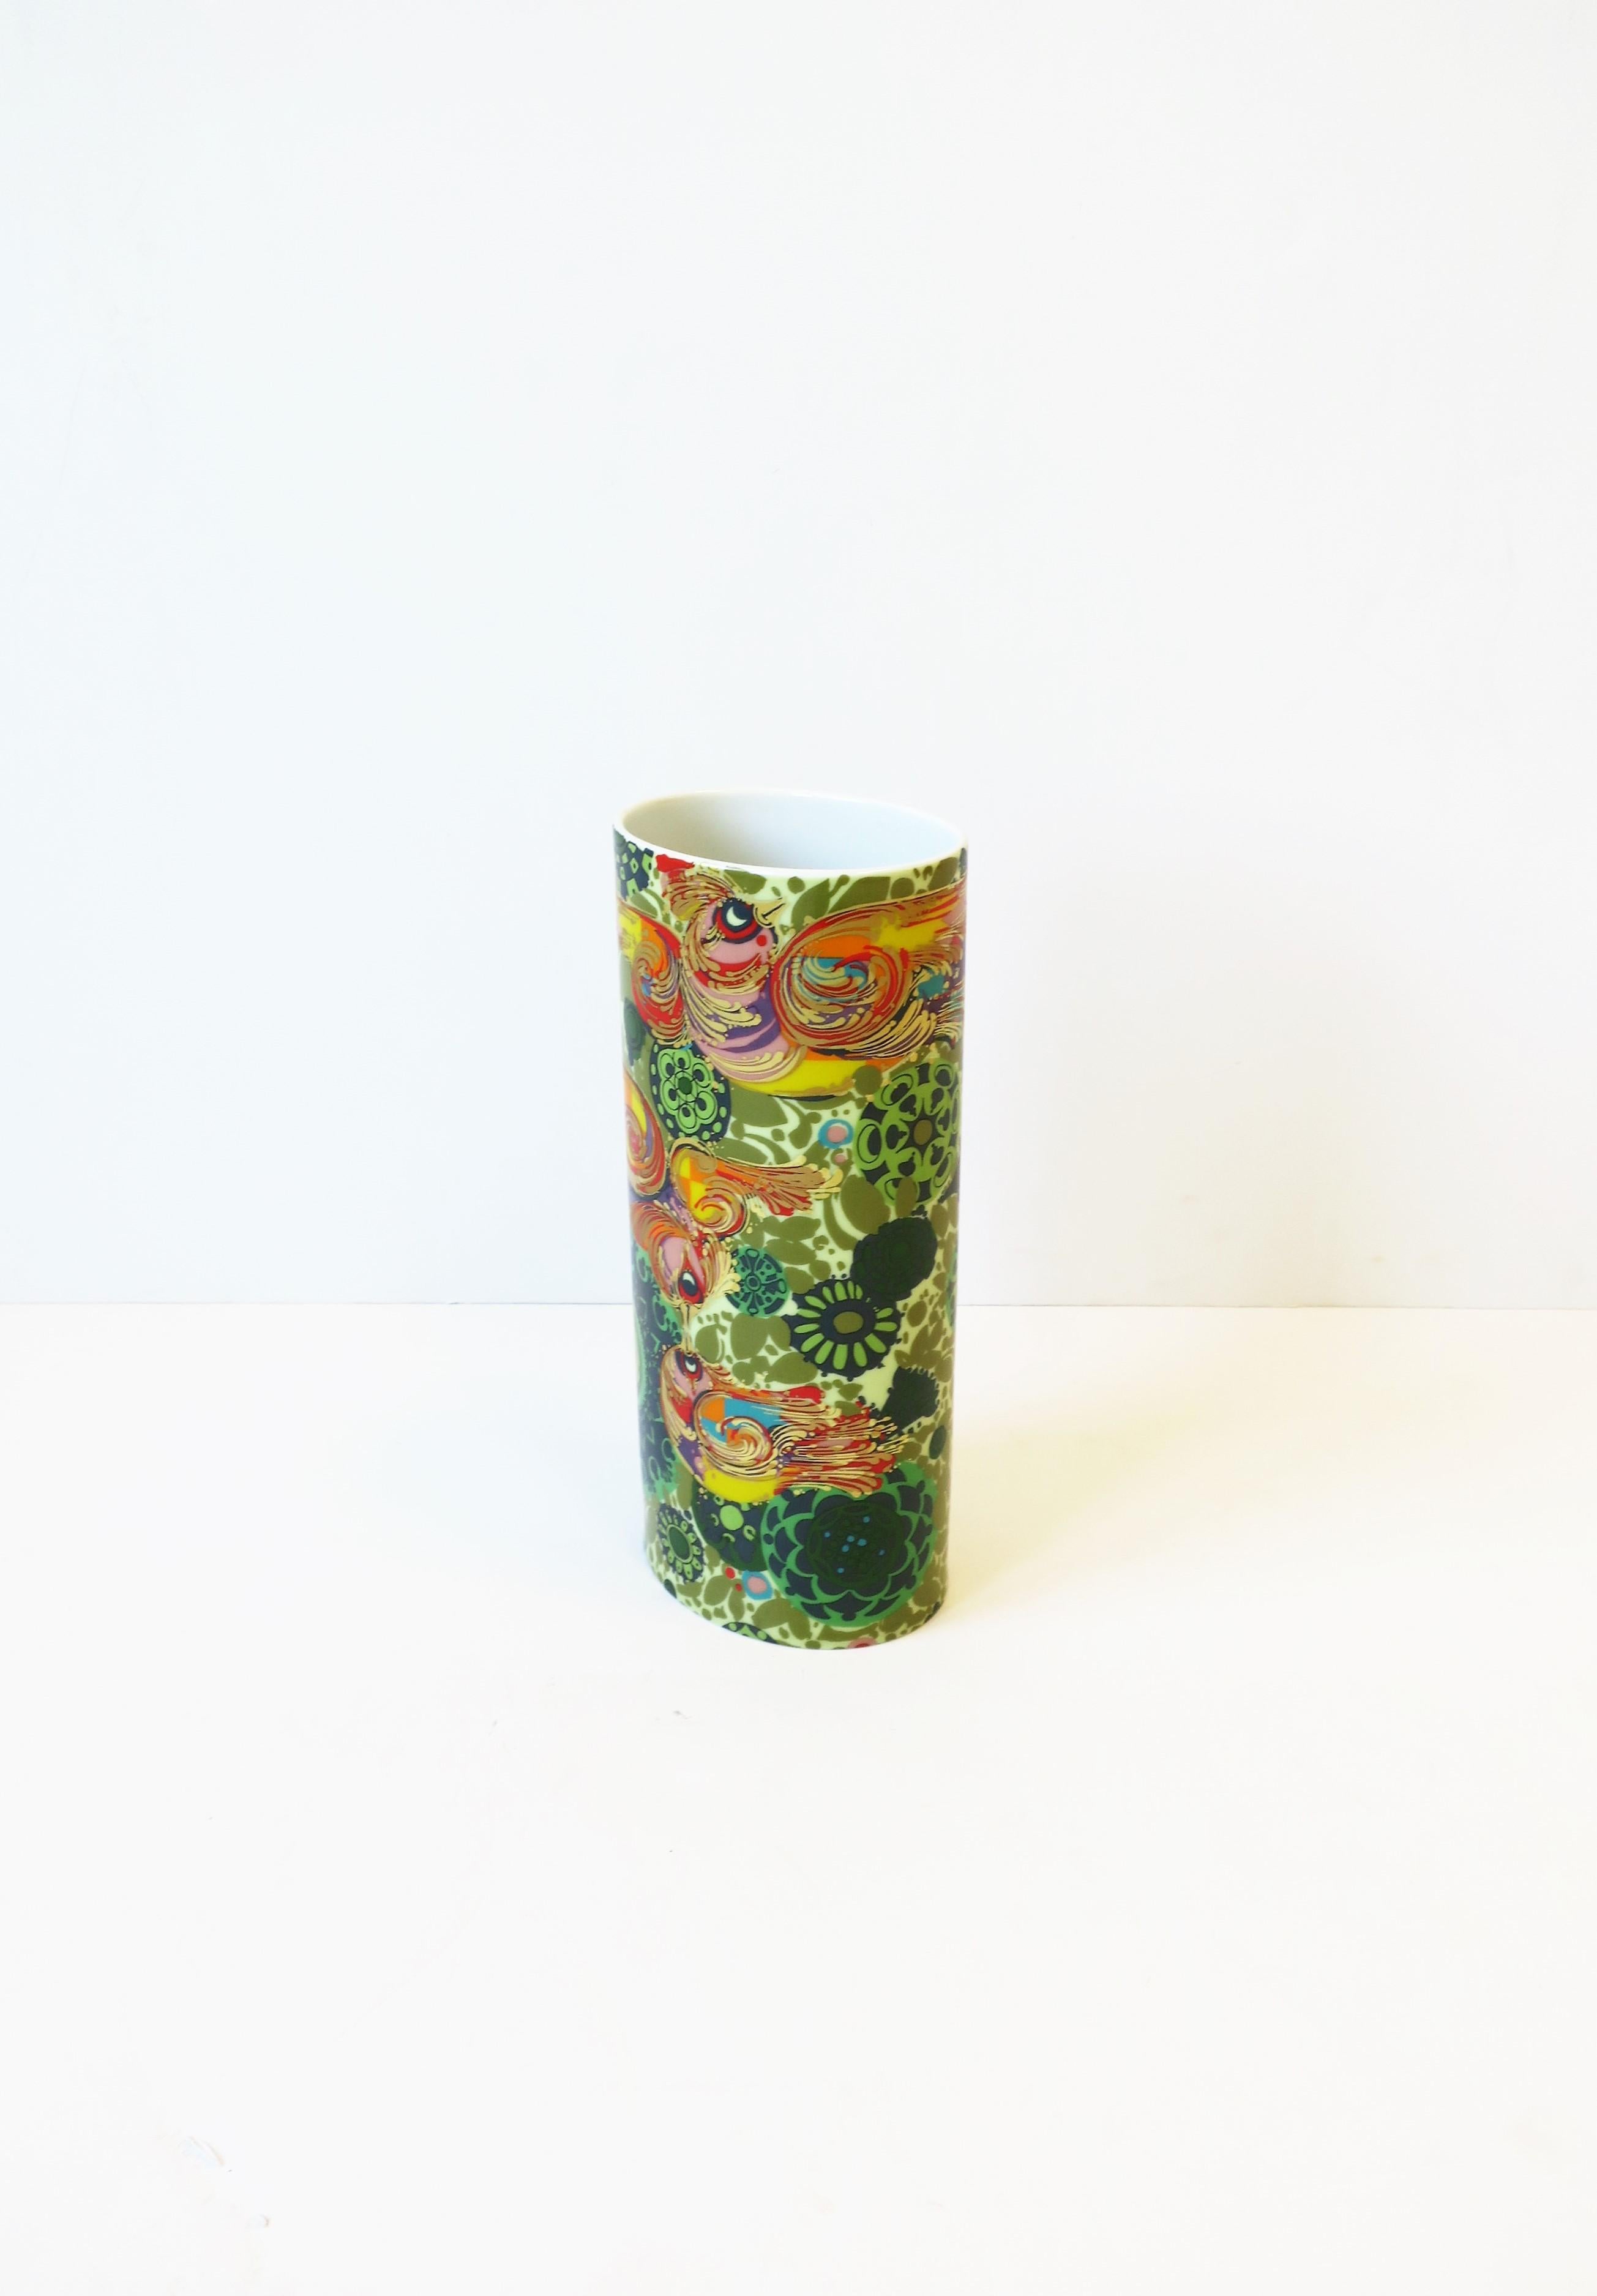 Rosenthal Studio-Line Vase by Danish Designer Bjorn Wiinblad with Bird Design 2